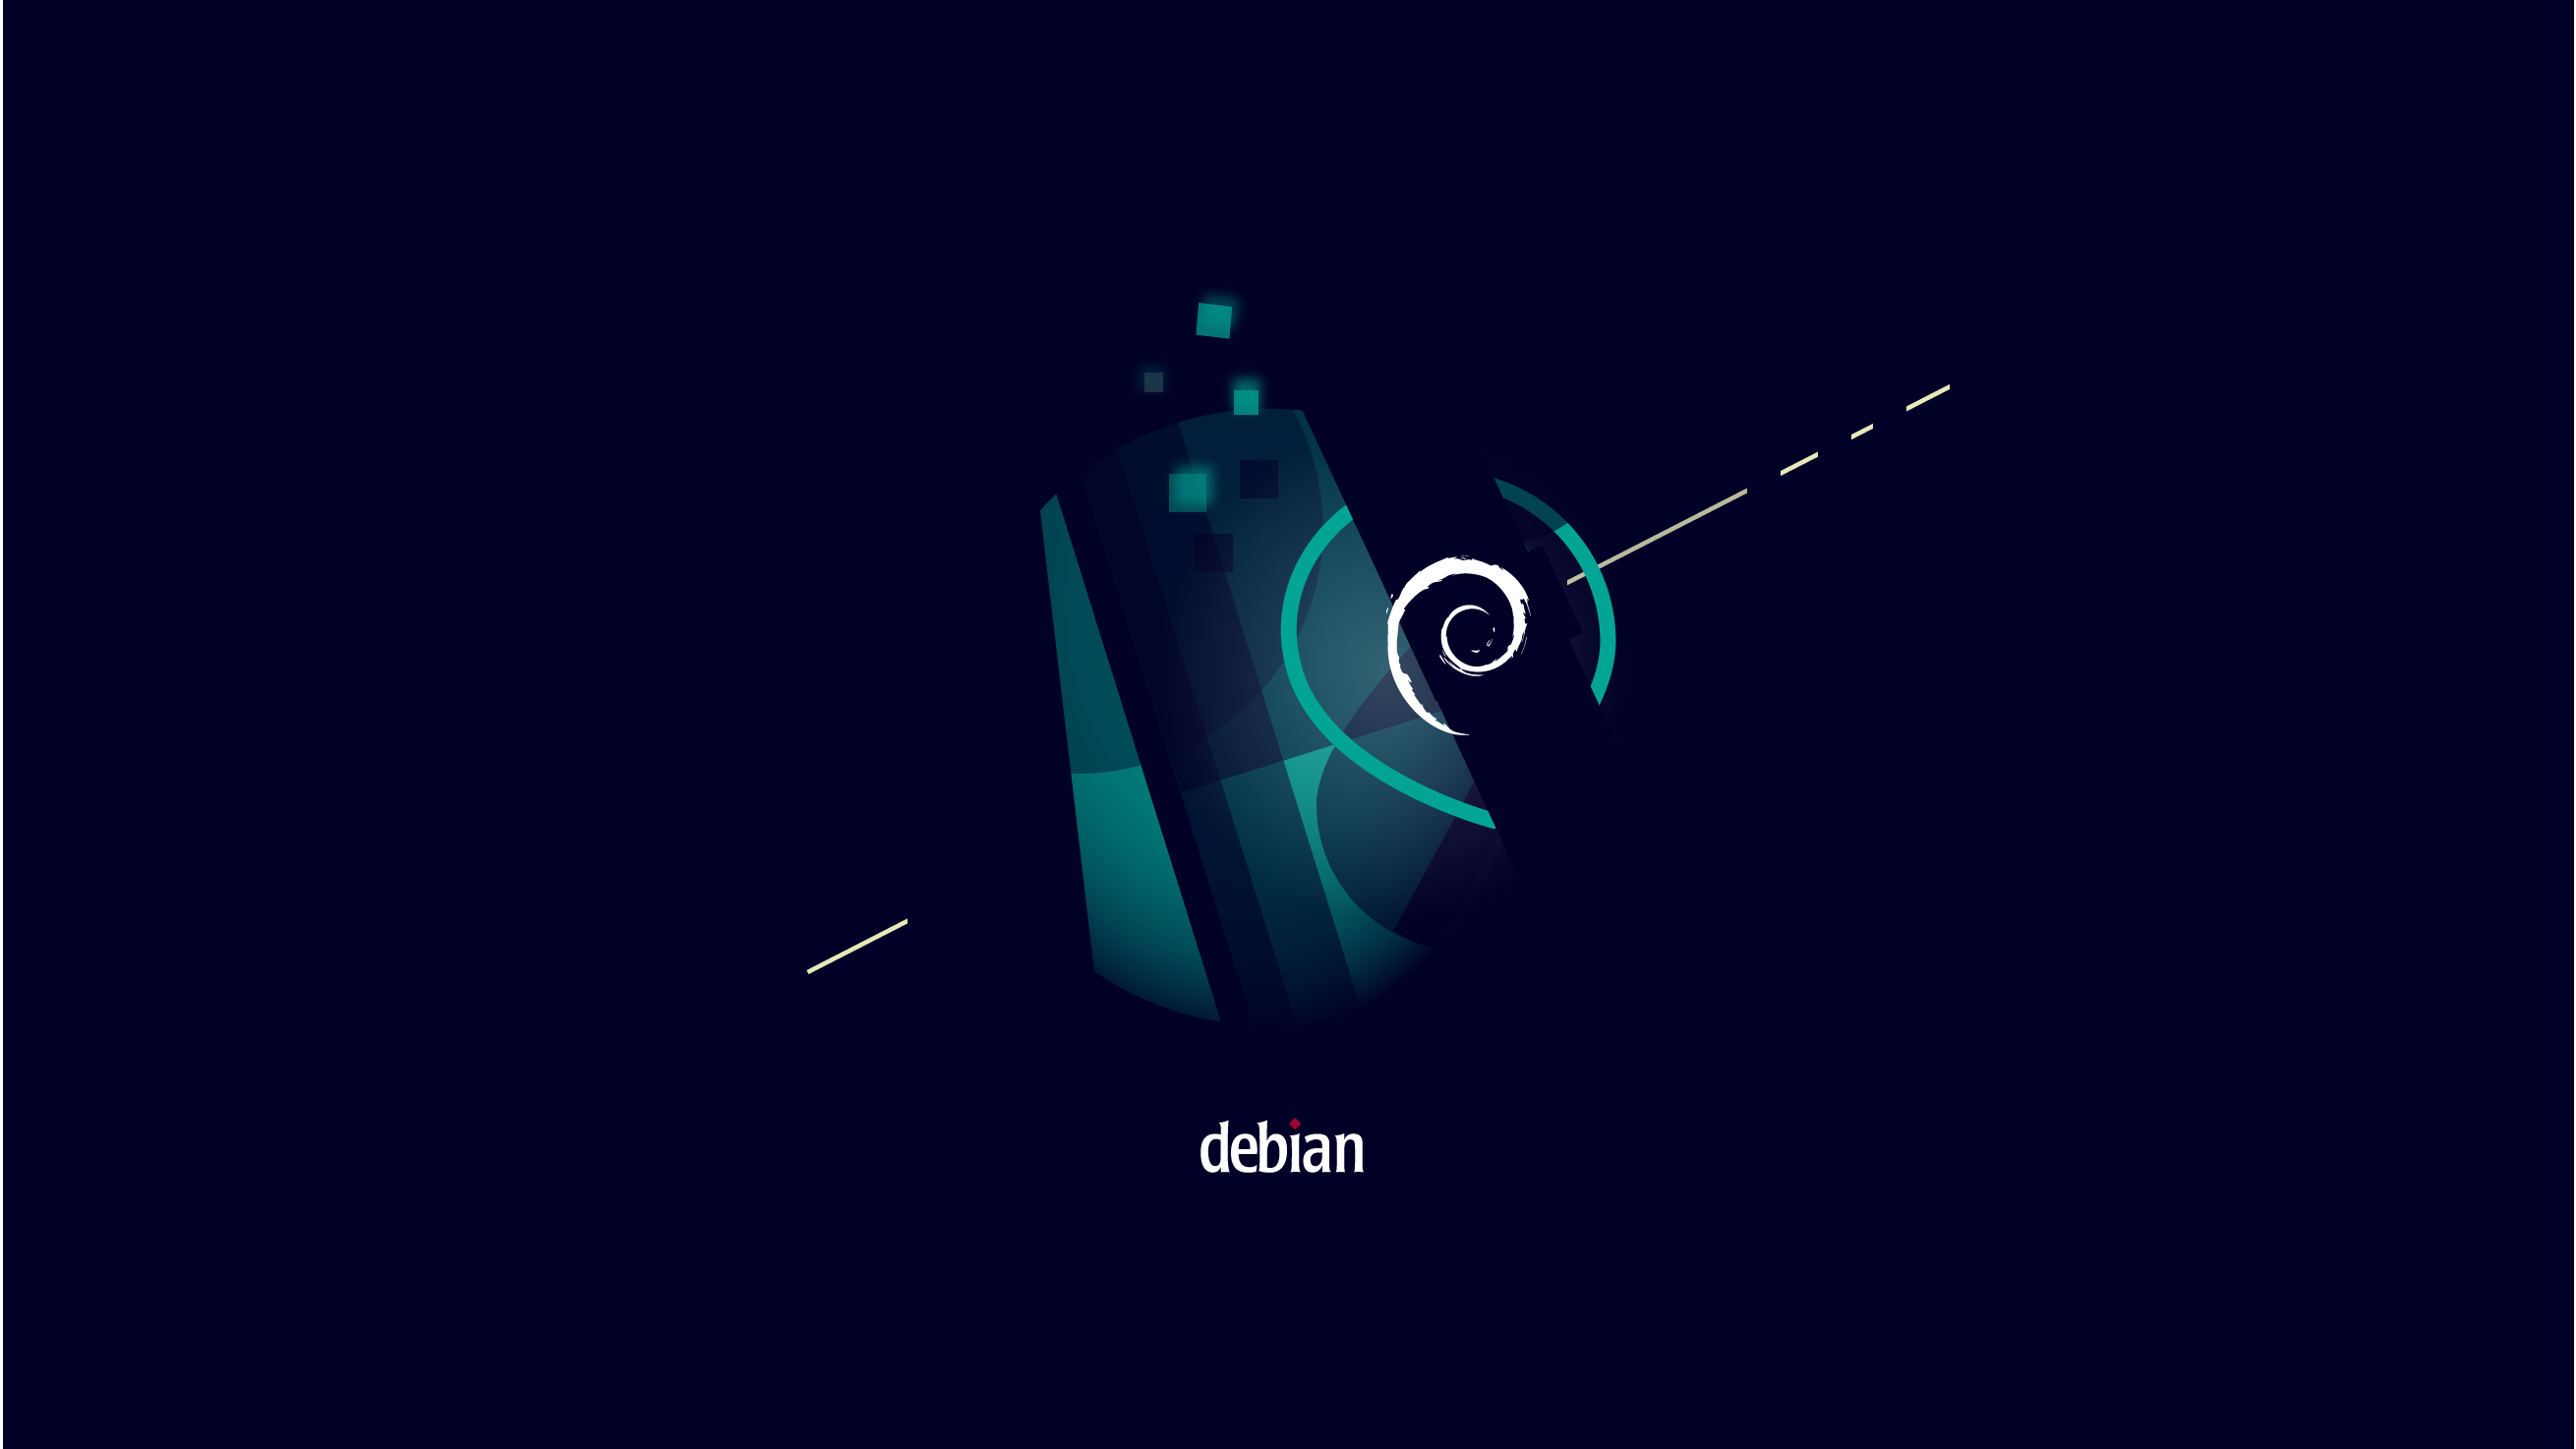 Linux Debian Minimalism 2620x1474